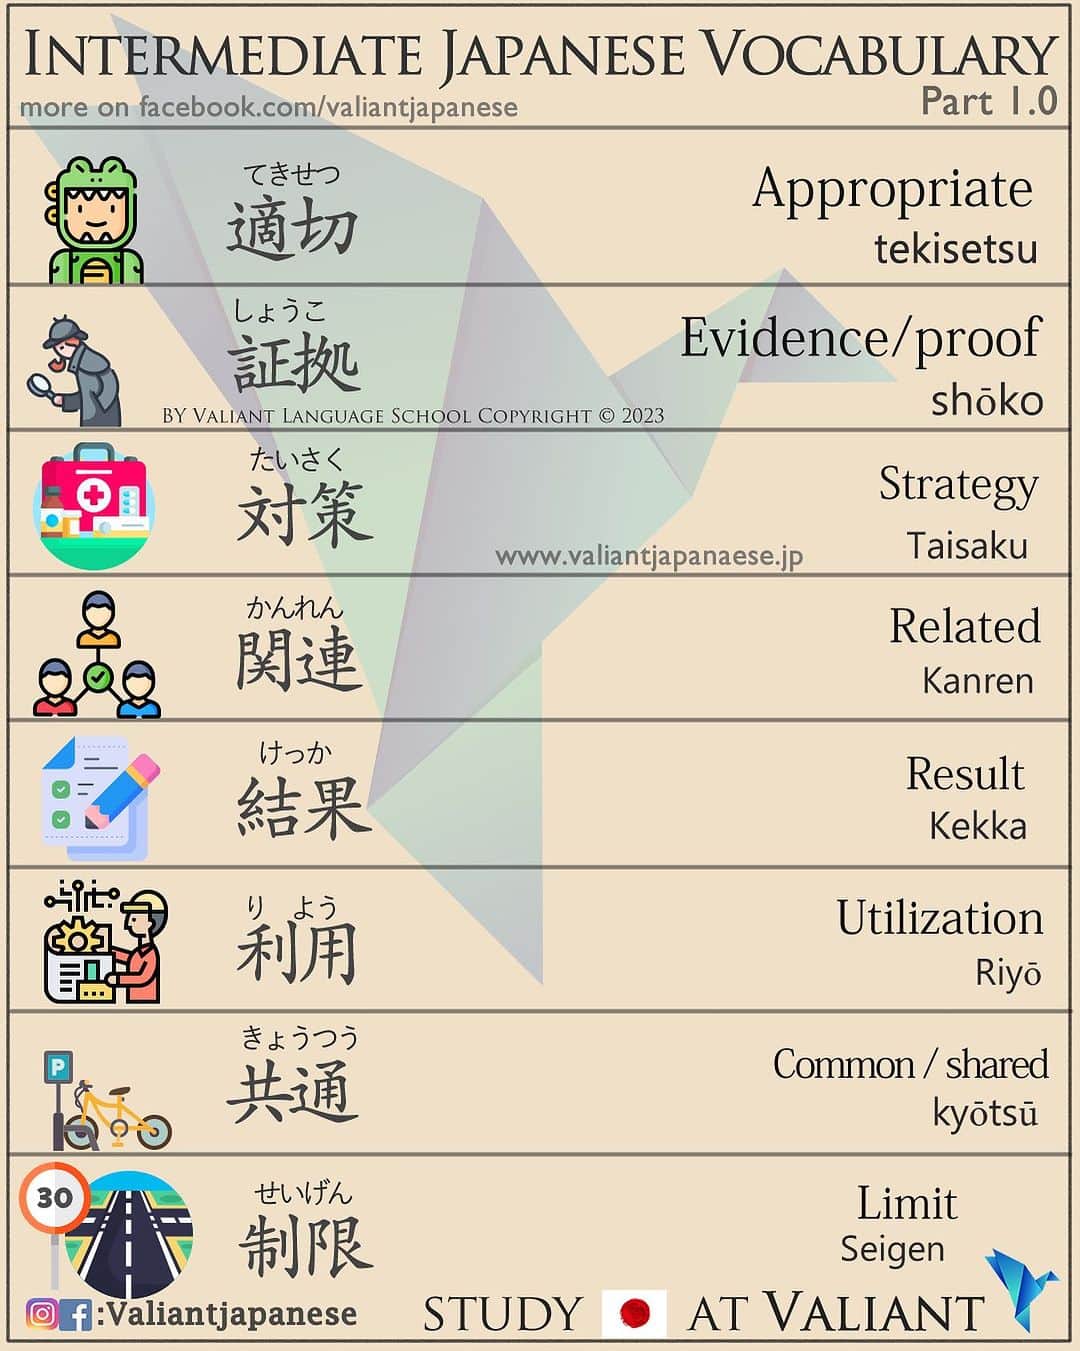 Valiant Language Schoolのインスタグラム：「Example Sentences below 👇 DM us to Start Learning Japanese!  ⛩📓: Intermediate Level Japanese 1.0: 適切 (Tekisetsu) - Meaning: "appropriate" or "suitable"  Example Sentence: この服はその会議には適切ではありません。 (Kono fuku wa sono kaigi ni wa tekisetsu de wa arimasen.) Translation: These clothes are not suitable for that meeting. 証拠 (Shouko) - Meaning: "evidence" or "proof"  Example Sentence: 彼に関する証拠は何もありません。 (Kare ni kan suru shouko wa nanimo arimasen.) Translation: There is no evidence related to him. 対策 (Taisaku) - Meaning: "countermeasure" or "strategy"  Example Sentence: 地震に備えて対策を立てる必要があります。 (Jishin ni sonaete taisaku o tateru hitsuyou ga arimasu.) Translation: We need to make preparations and strategies for earthquakes. 関連 (Kanren) - Meaning: "related" or "relevant"  Example Sentence: これは彼の仕事に関連したプロジェクトです。 (Kore wa kare no shigoto ni kanren shita purojekuto desu.) Translation: This is a project related to his job. 結果 (Kekka) - Meaning: "result" or "outcome"  Example Sentence: 彼の努力の結果、試験に合格しました。 (Kare no doryoku no kekka, shiken ni goukaku shimashita.) Translation: As a result of his efforts, he passed the exam. 利用 (Riyō) - Meaning: "utilization" or "use"  Example Sentence: このアプリは便利な利用方法がたくさんあります。 (Kono apuri wa benri na riyō houhou ga takusan arimasu.) Translation: This app has many useful ways of utilization. 共通 (Kyoutsuu) - Meaning: "common" or "shared"  Example Sentence: 私たちの共通の友達がいます。 (Watashitachi no kyoutsuu no tomodachi ga imasu.) Translation: We have a common friend. 制限 (Seigen) - Meaning: "limit" or "restriction"  Example Sentence: この公園では犬の制限があります。 (Kono kouen de wa inu no seigen ga arimasu.) Translation: There are restrictions on dogs in this park.」